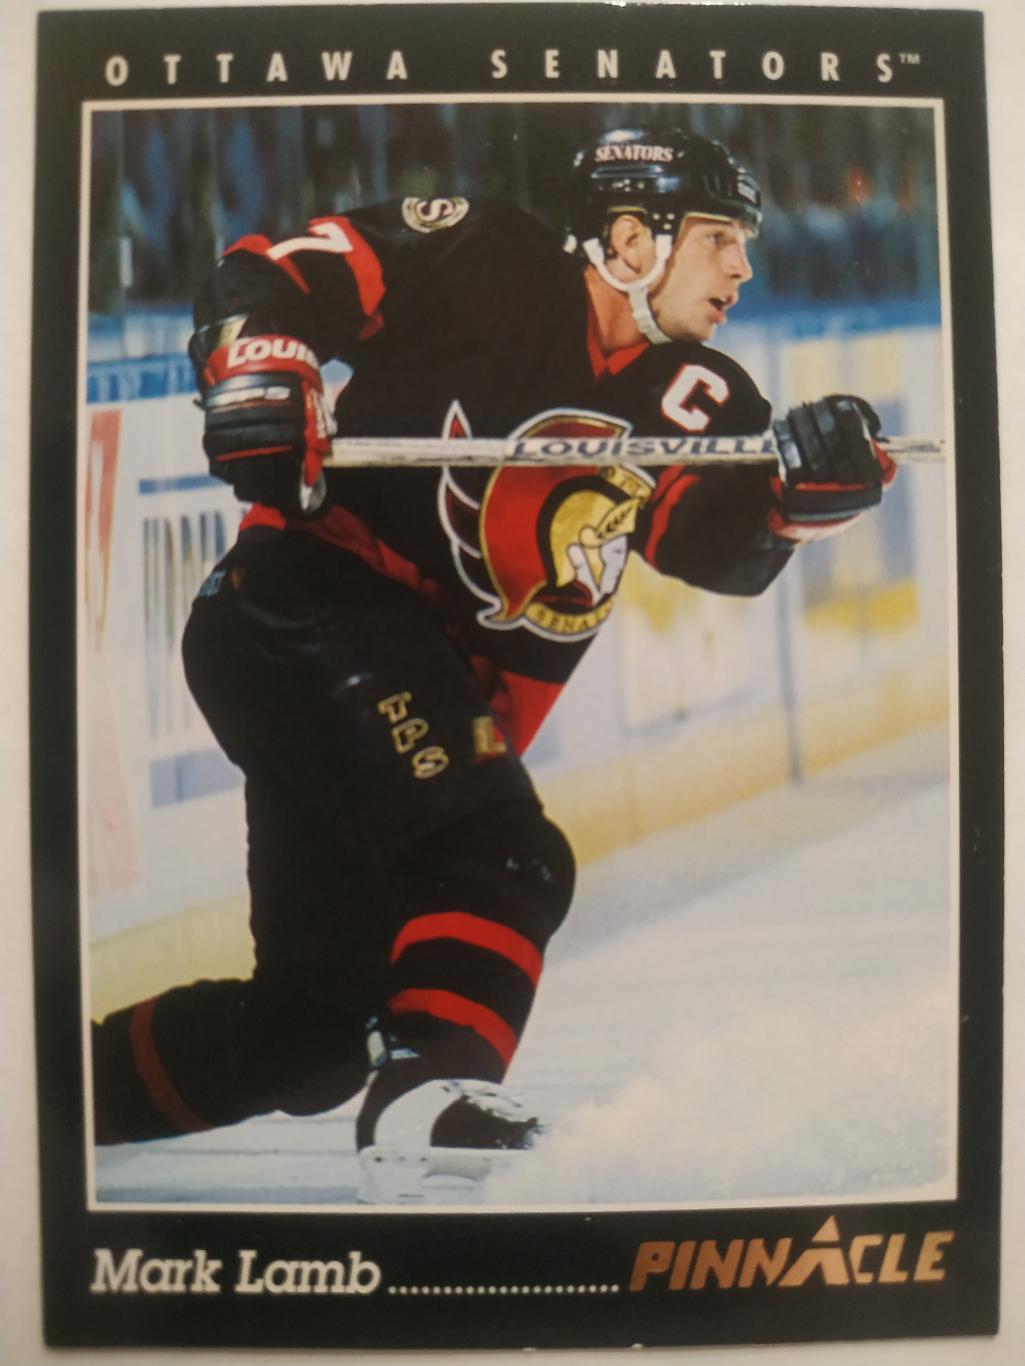 ХОККЕЙ КАРТОЧКА НХЛ PINNACLE 1993-94 NHL MARK LAMB OTTAWA SENATORS #323